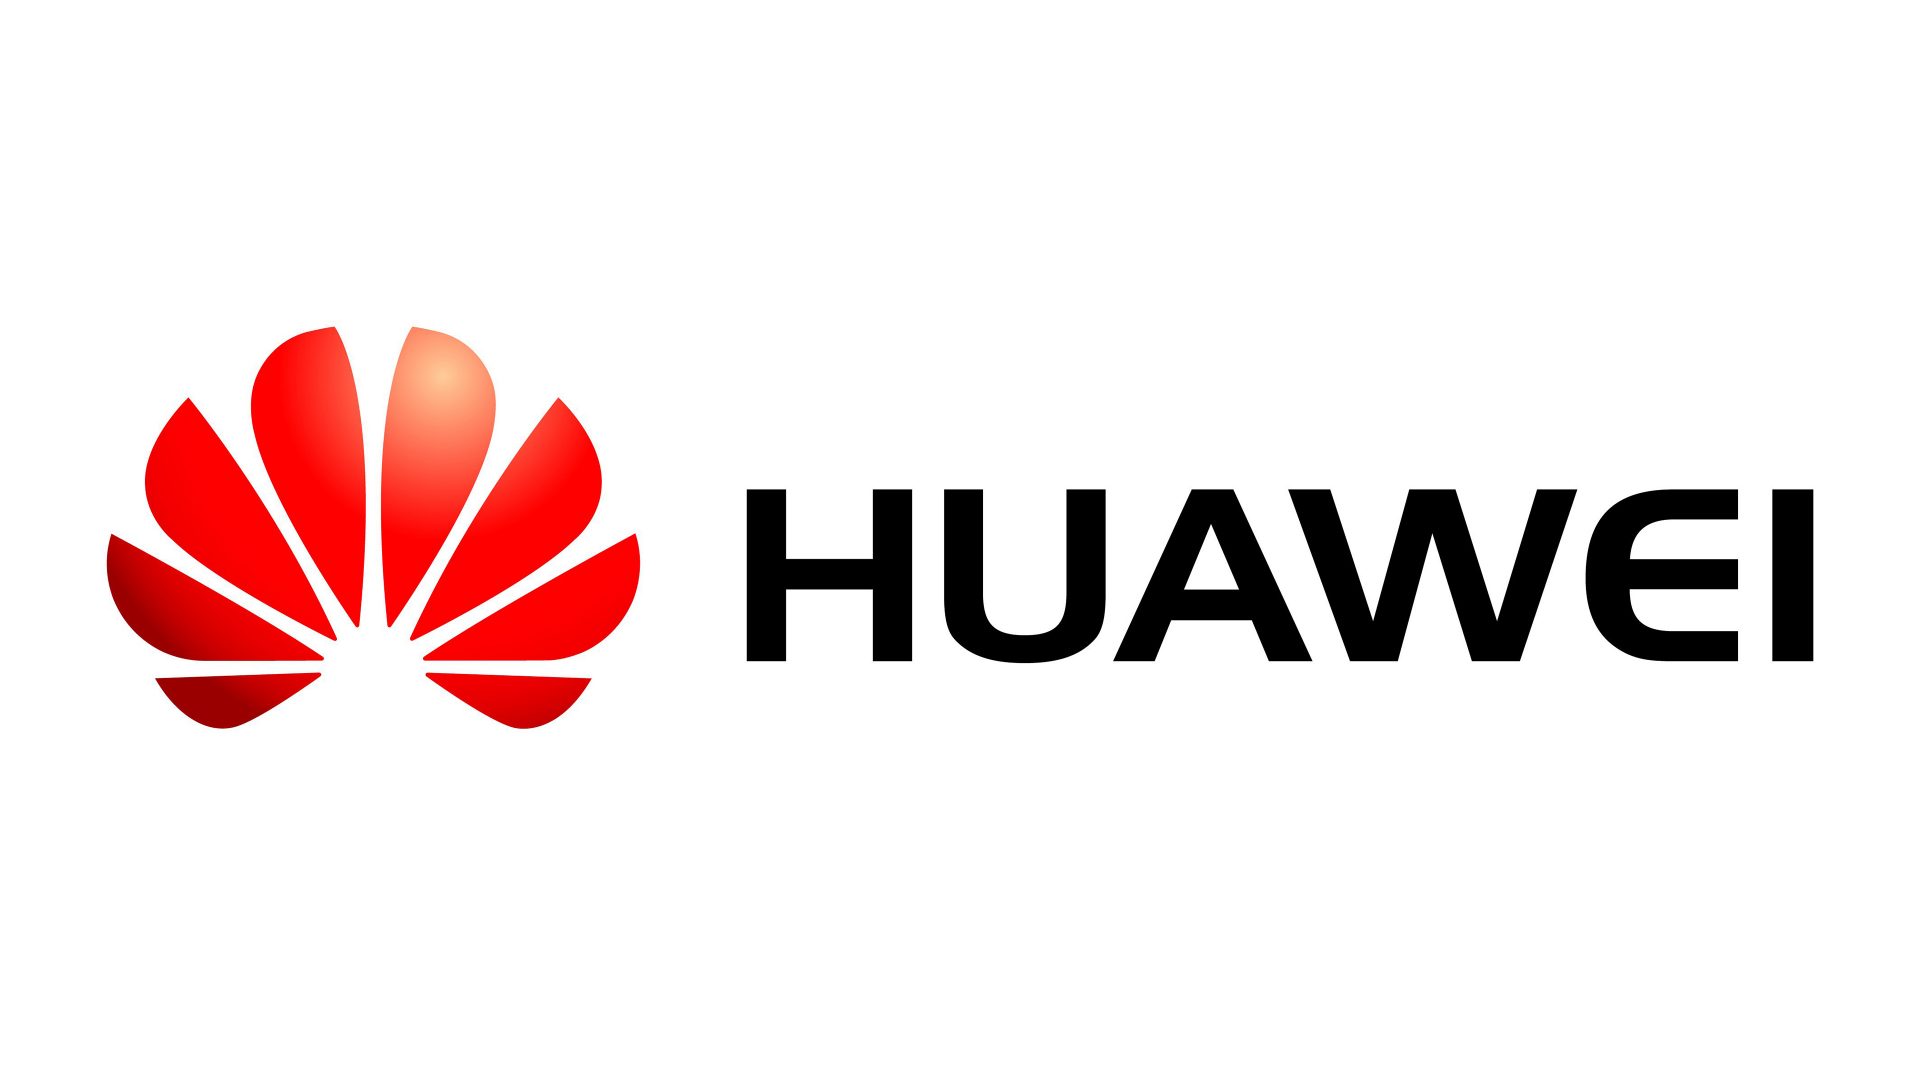 Om et år er Huawei på vej ud